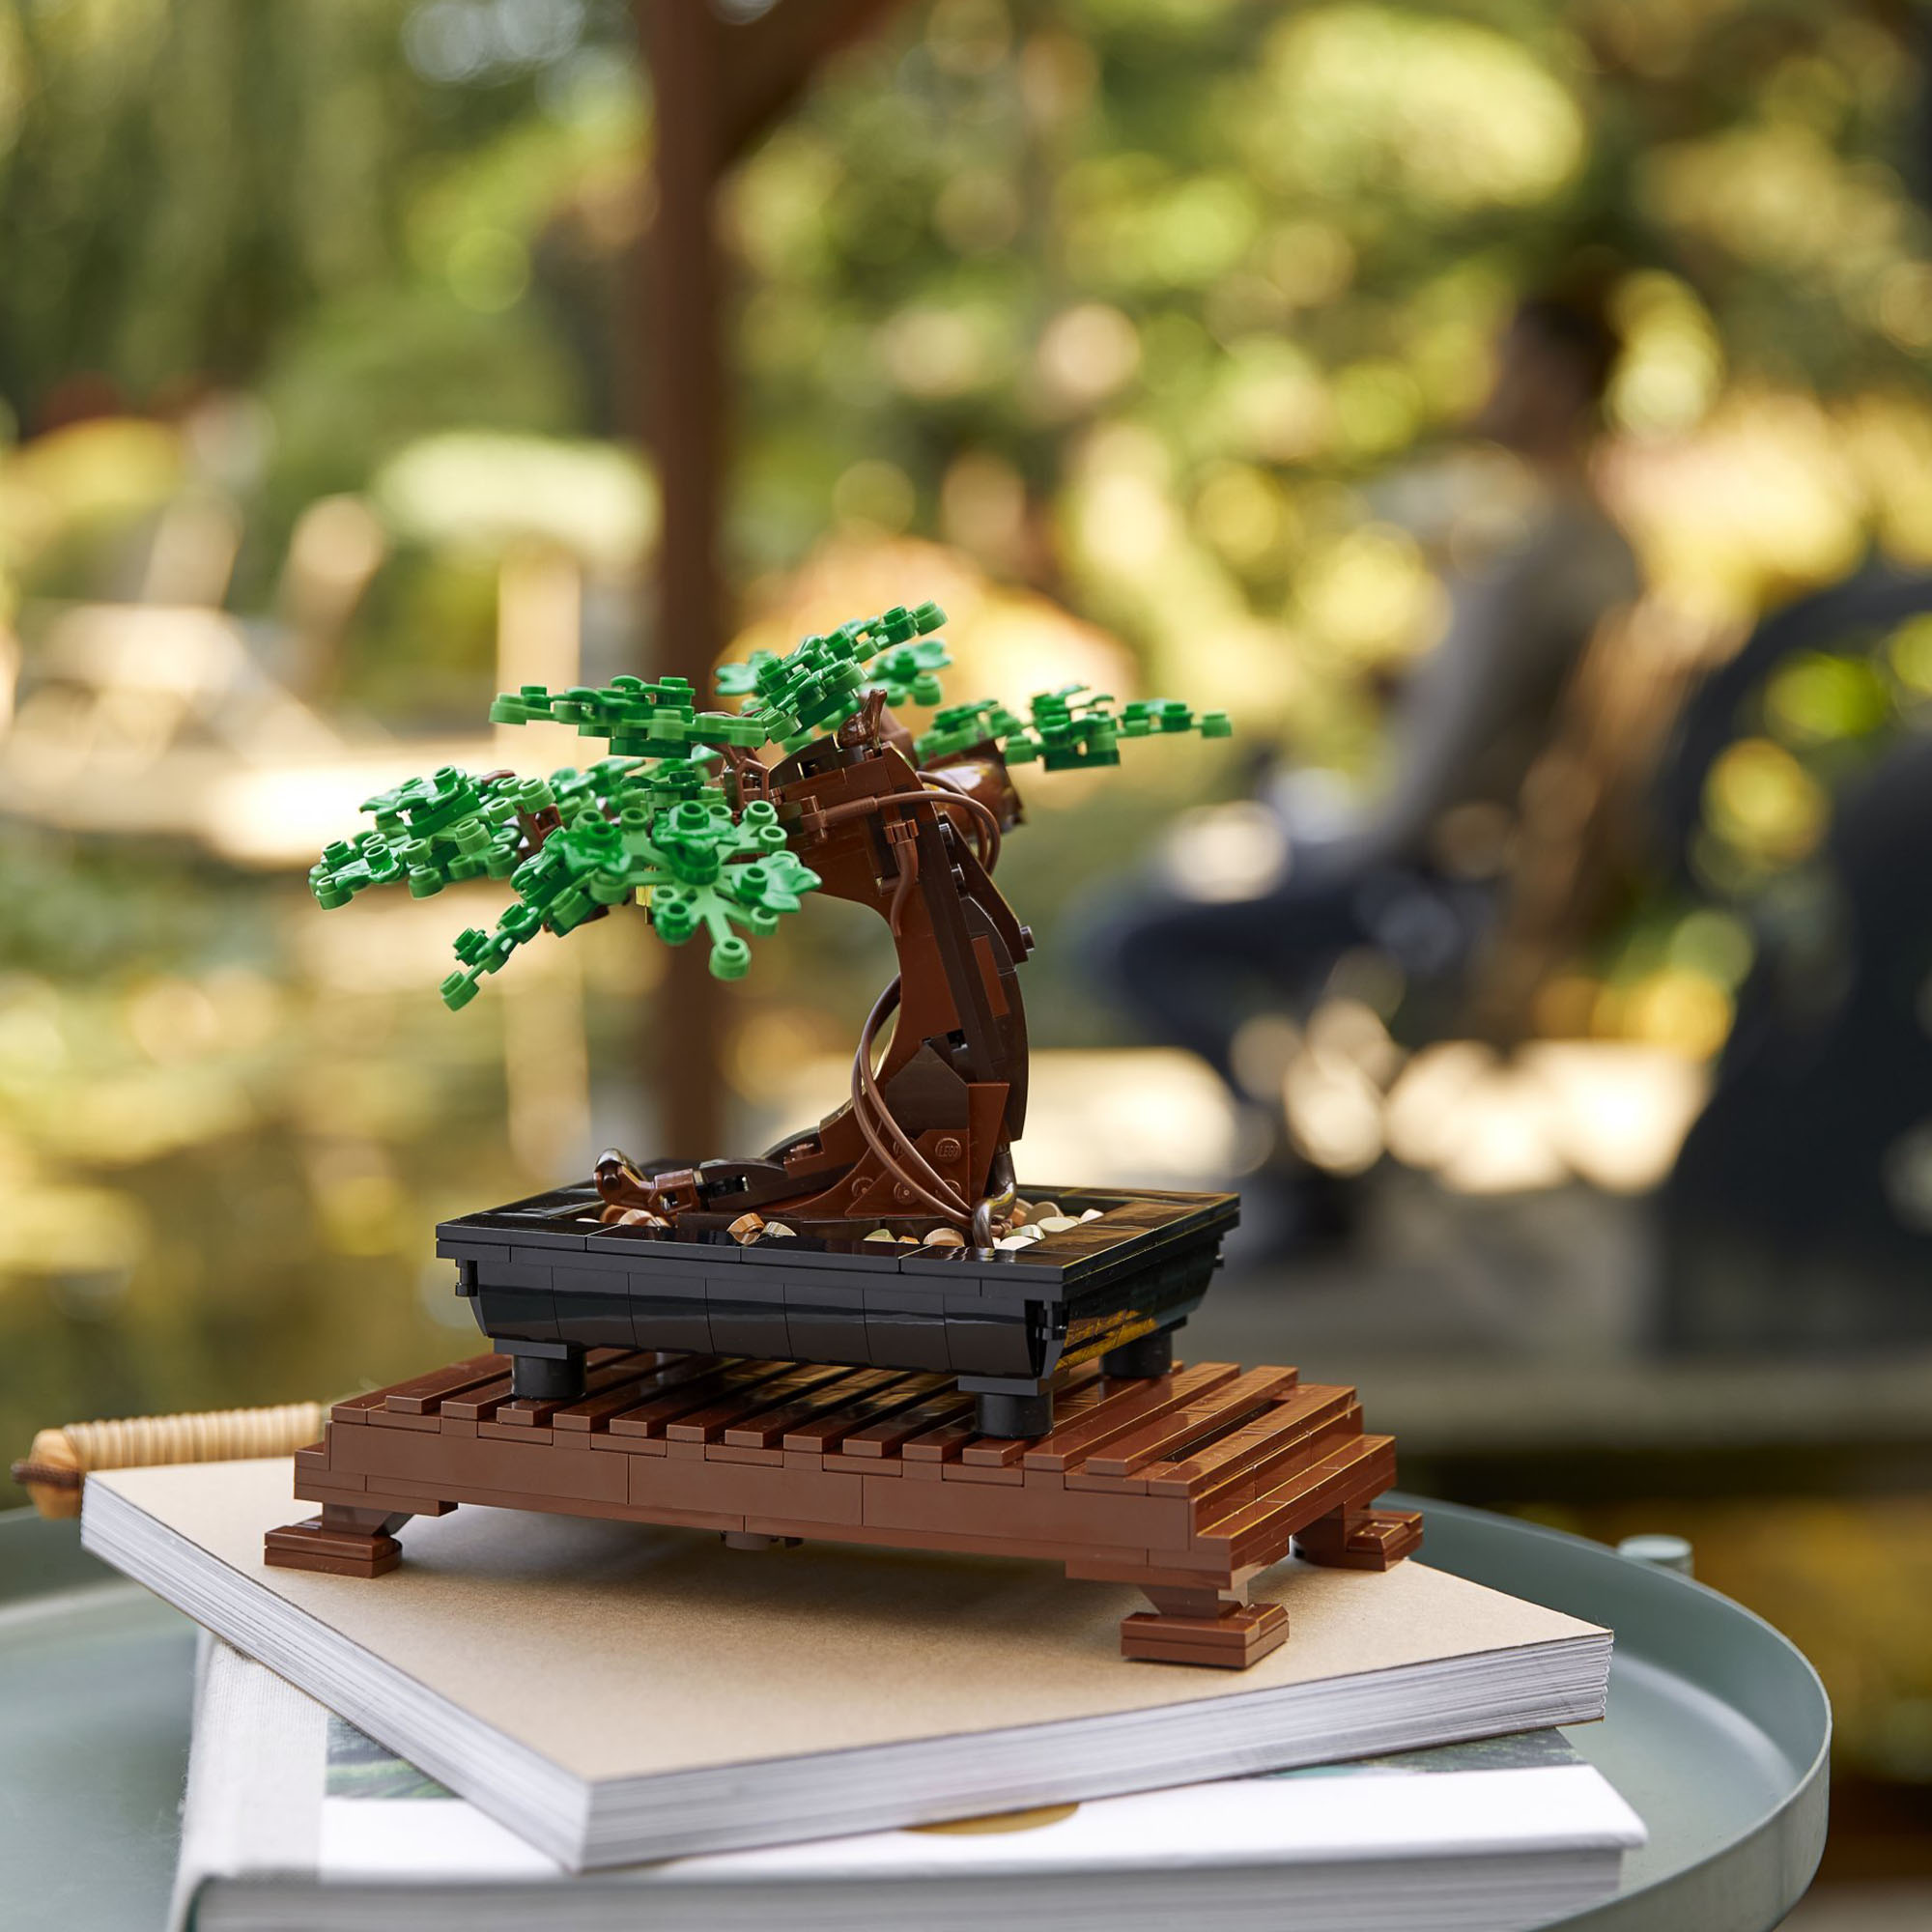 LEGO Creator Albero Bonsai, Piante Artificiali, Oggetti per la Casa, Hobby Creat 10281, , large